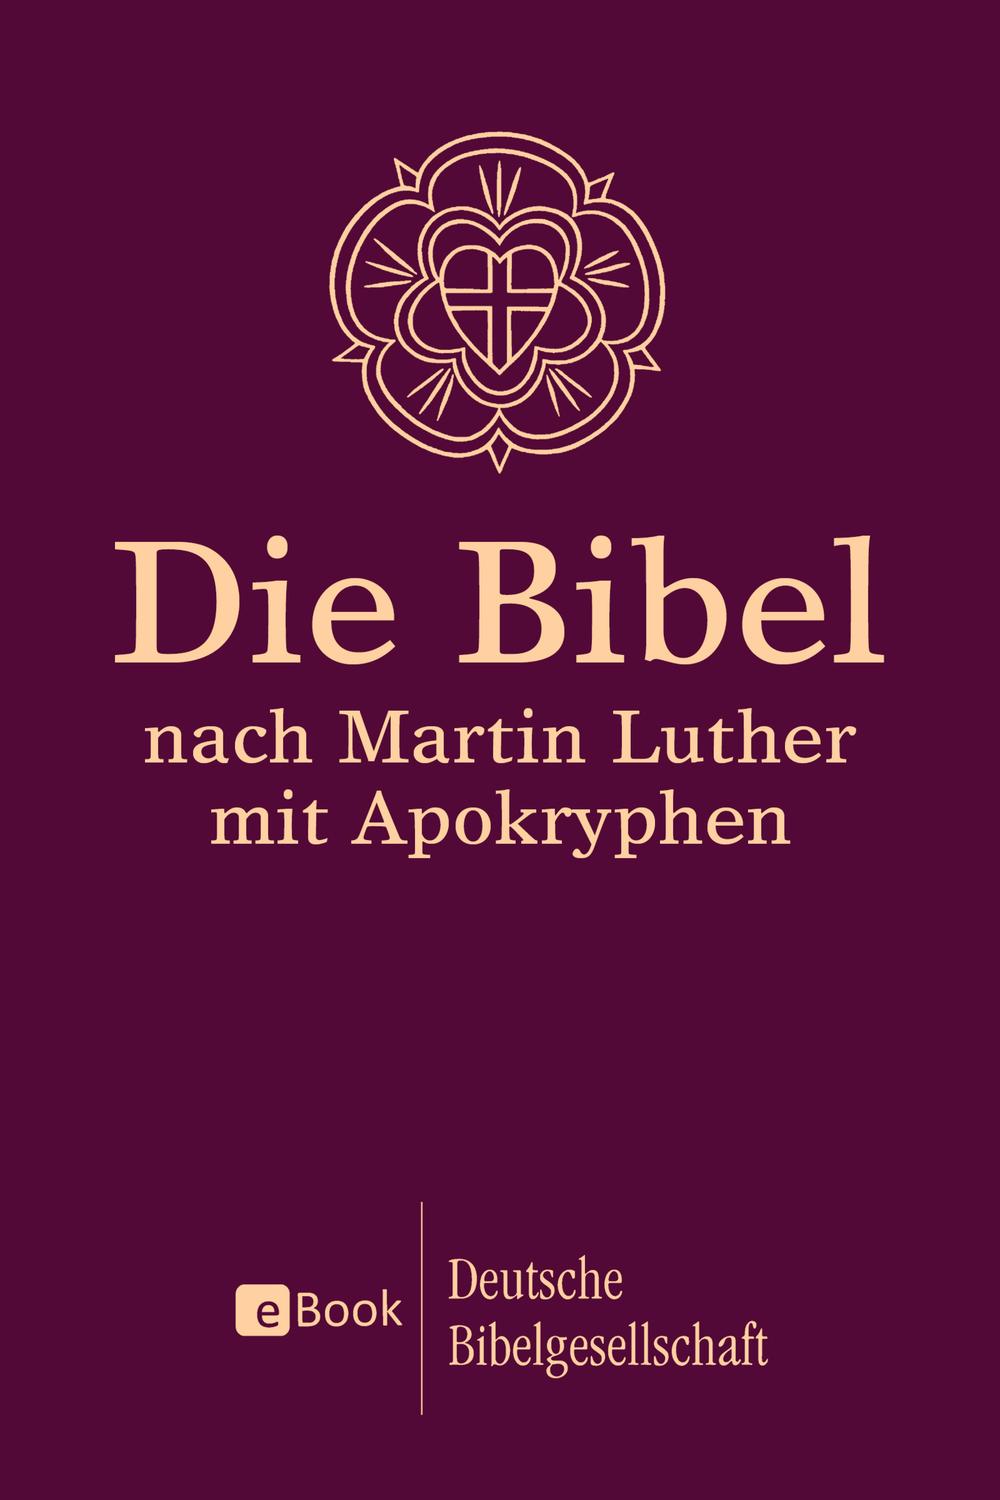 Die Bibel nach Martin Luther - Martin Luther